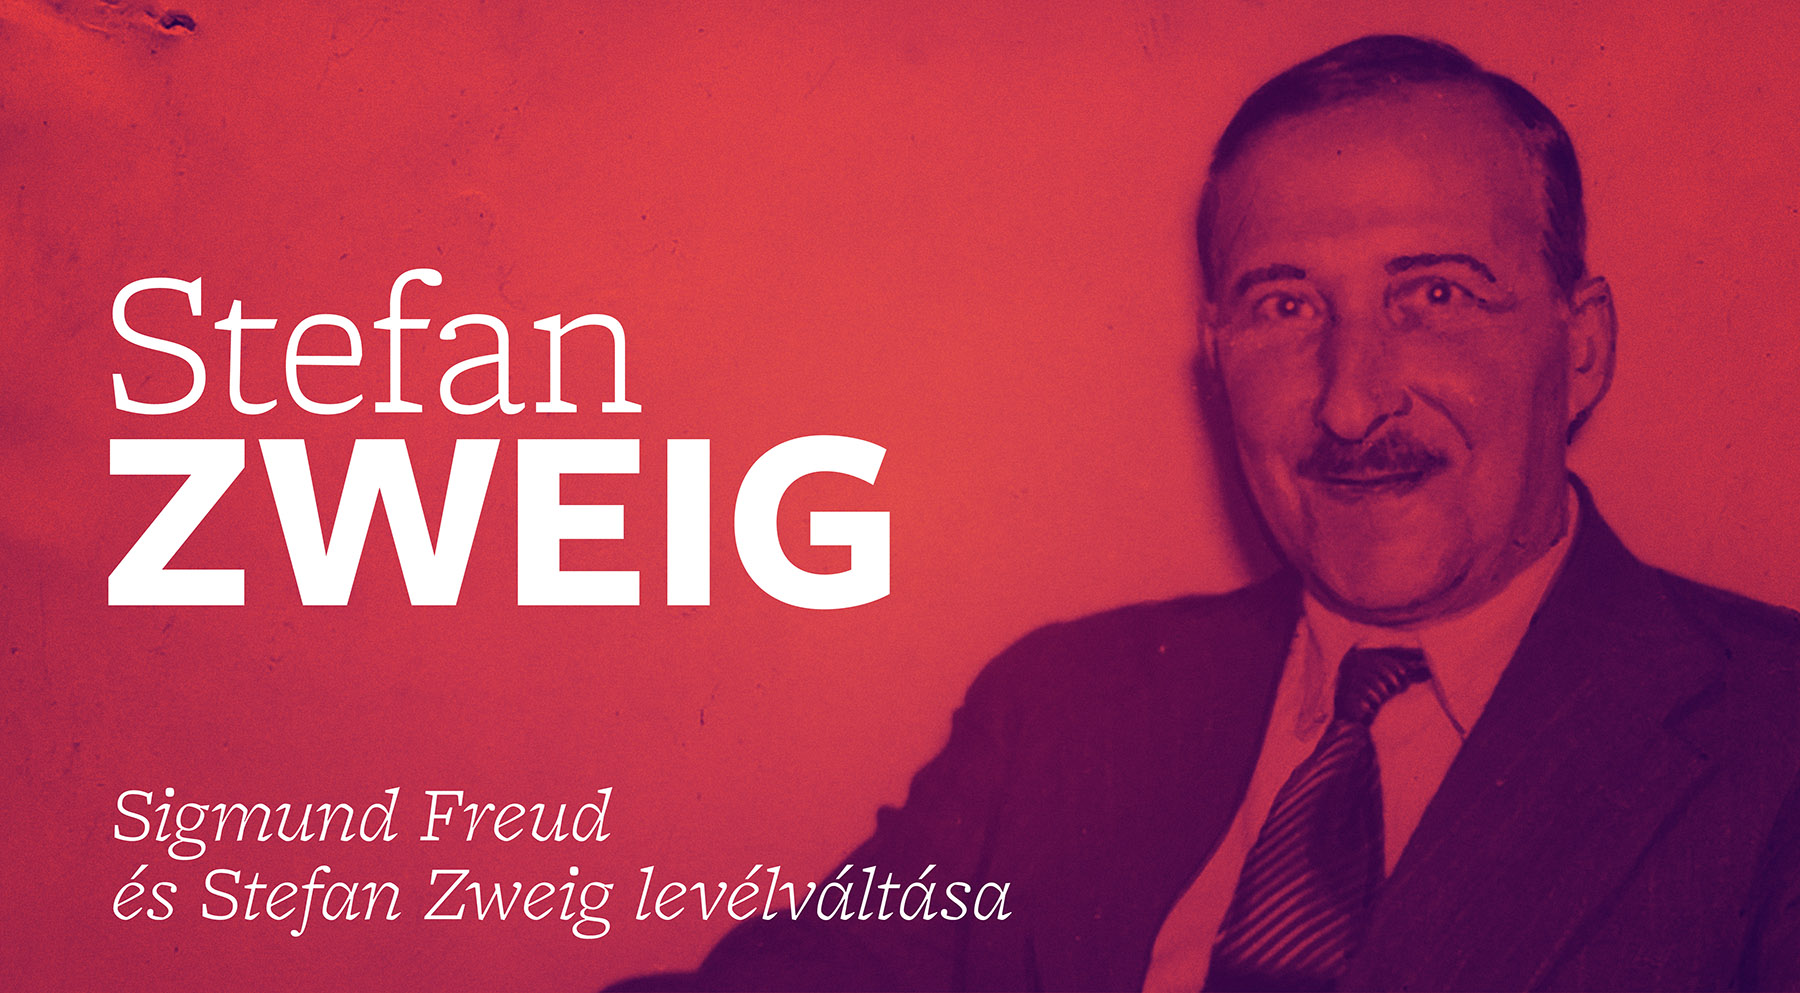 Sigmund Freud és Stefan Zweig levélváltása